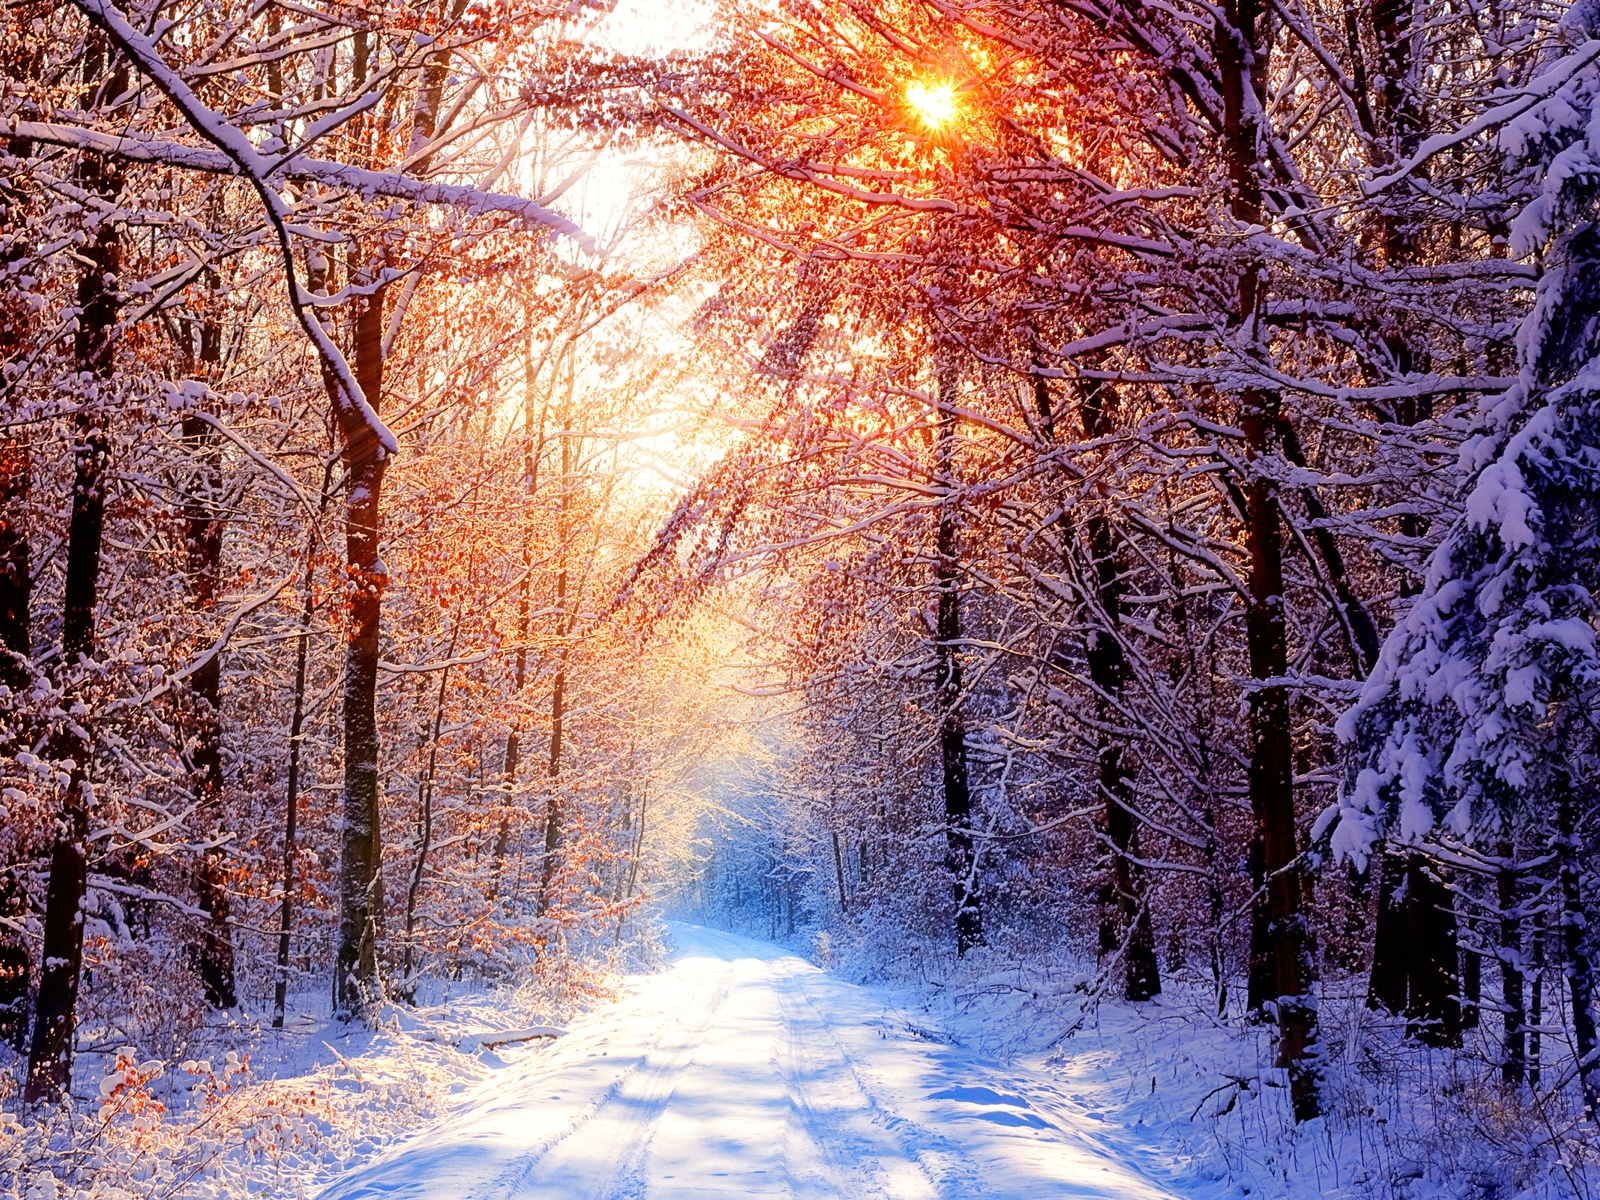 http://3.bp.blogspot.com/_RAlP3BmEW1Q/TQNtvGg9htI/AAAAAAAABdw/XaNyCkmS45I/s1600/Winter-achtergronden-winter-wallpapers-winter-landschappen-8.jpg